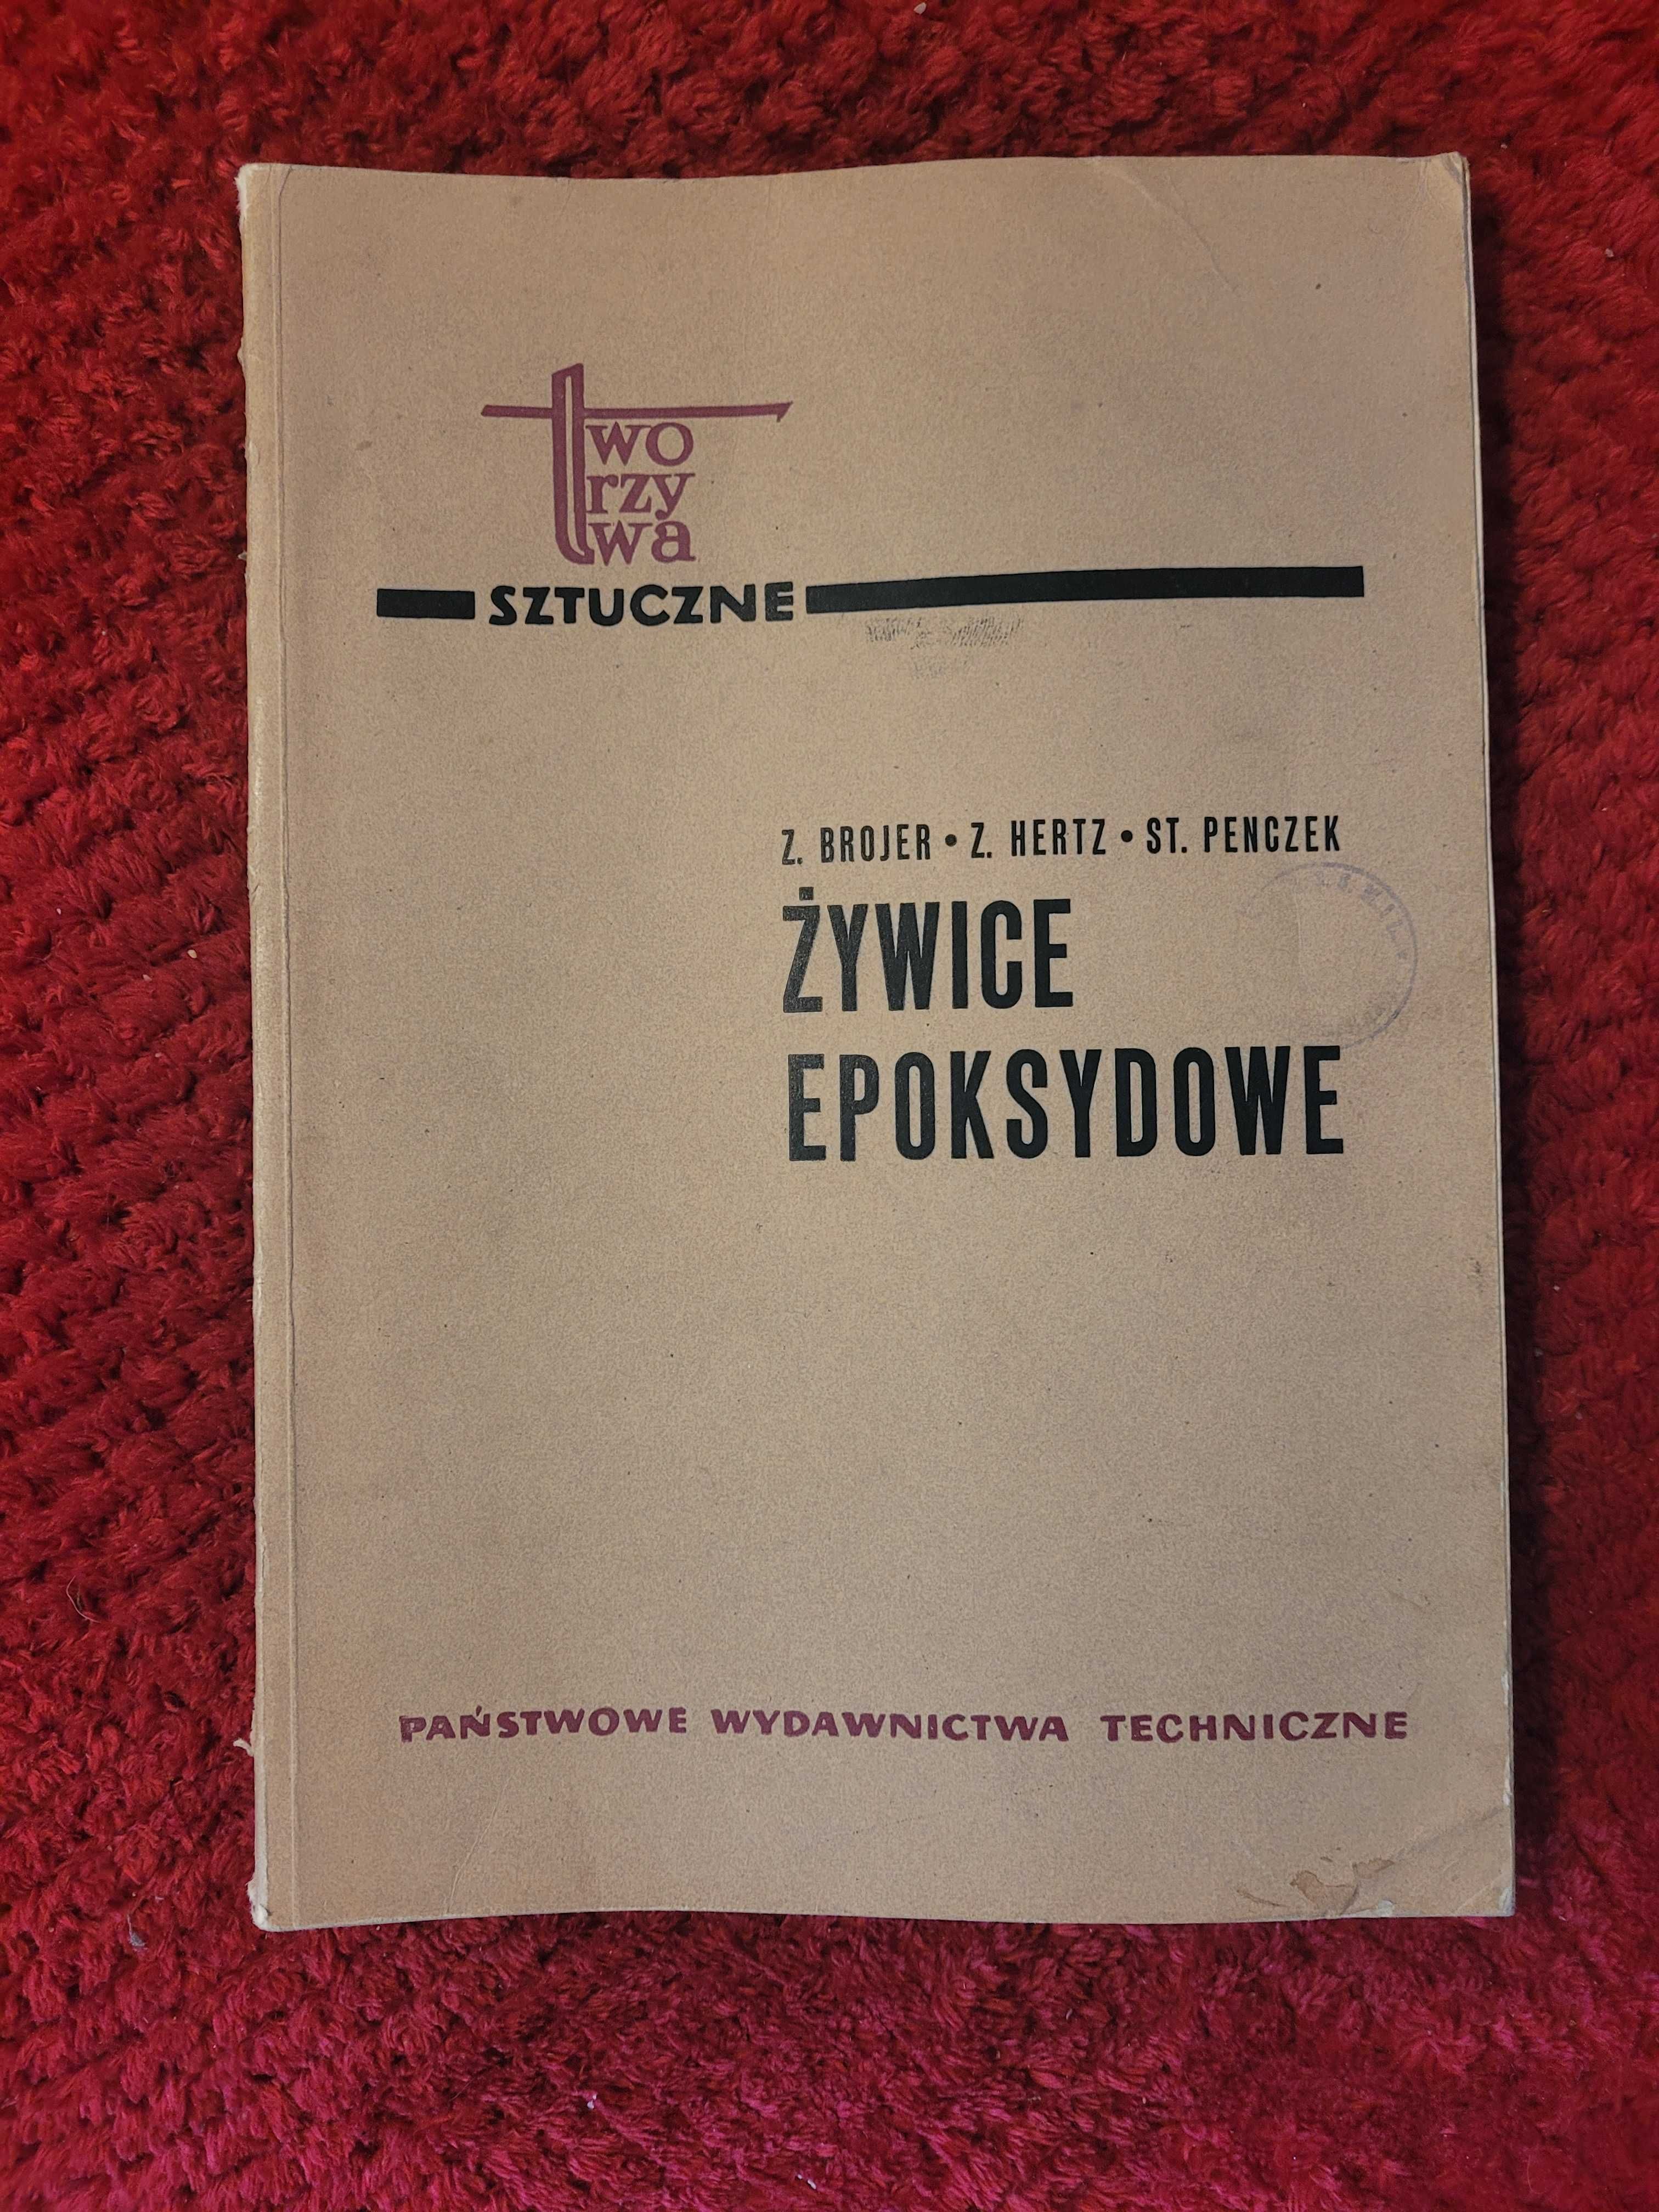 Książka "Żywice Epoksydowe" Penczek, Brojler, Hertz